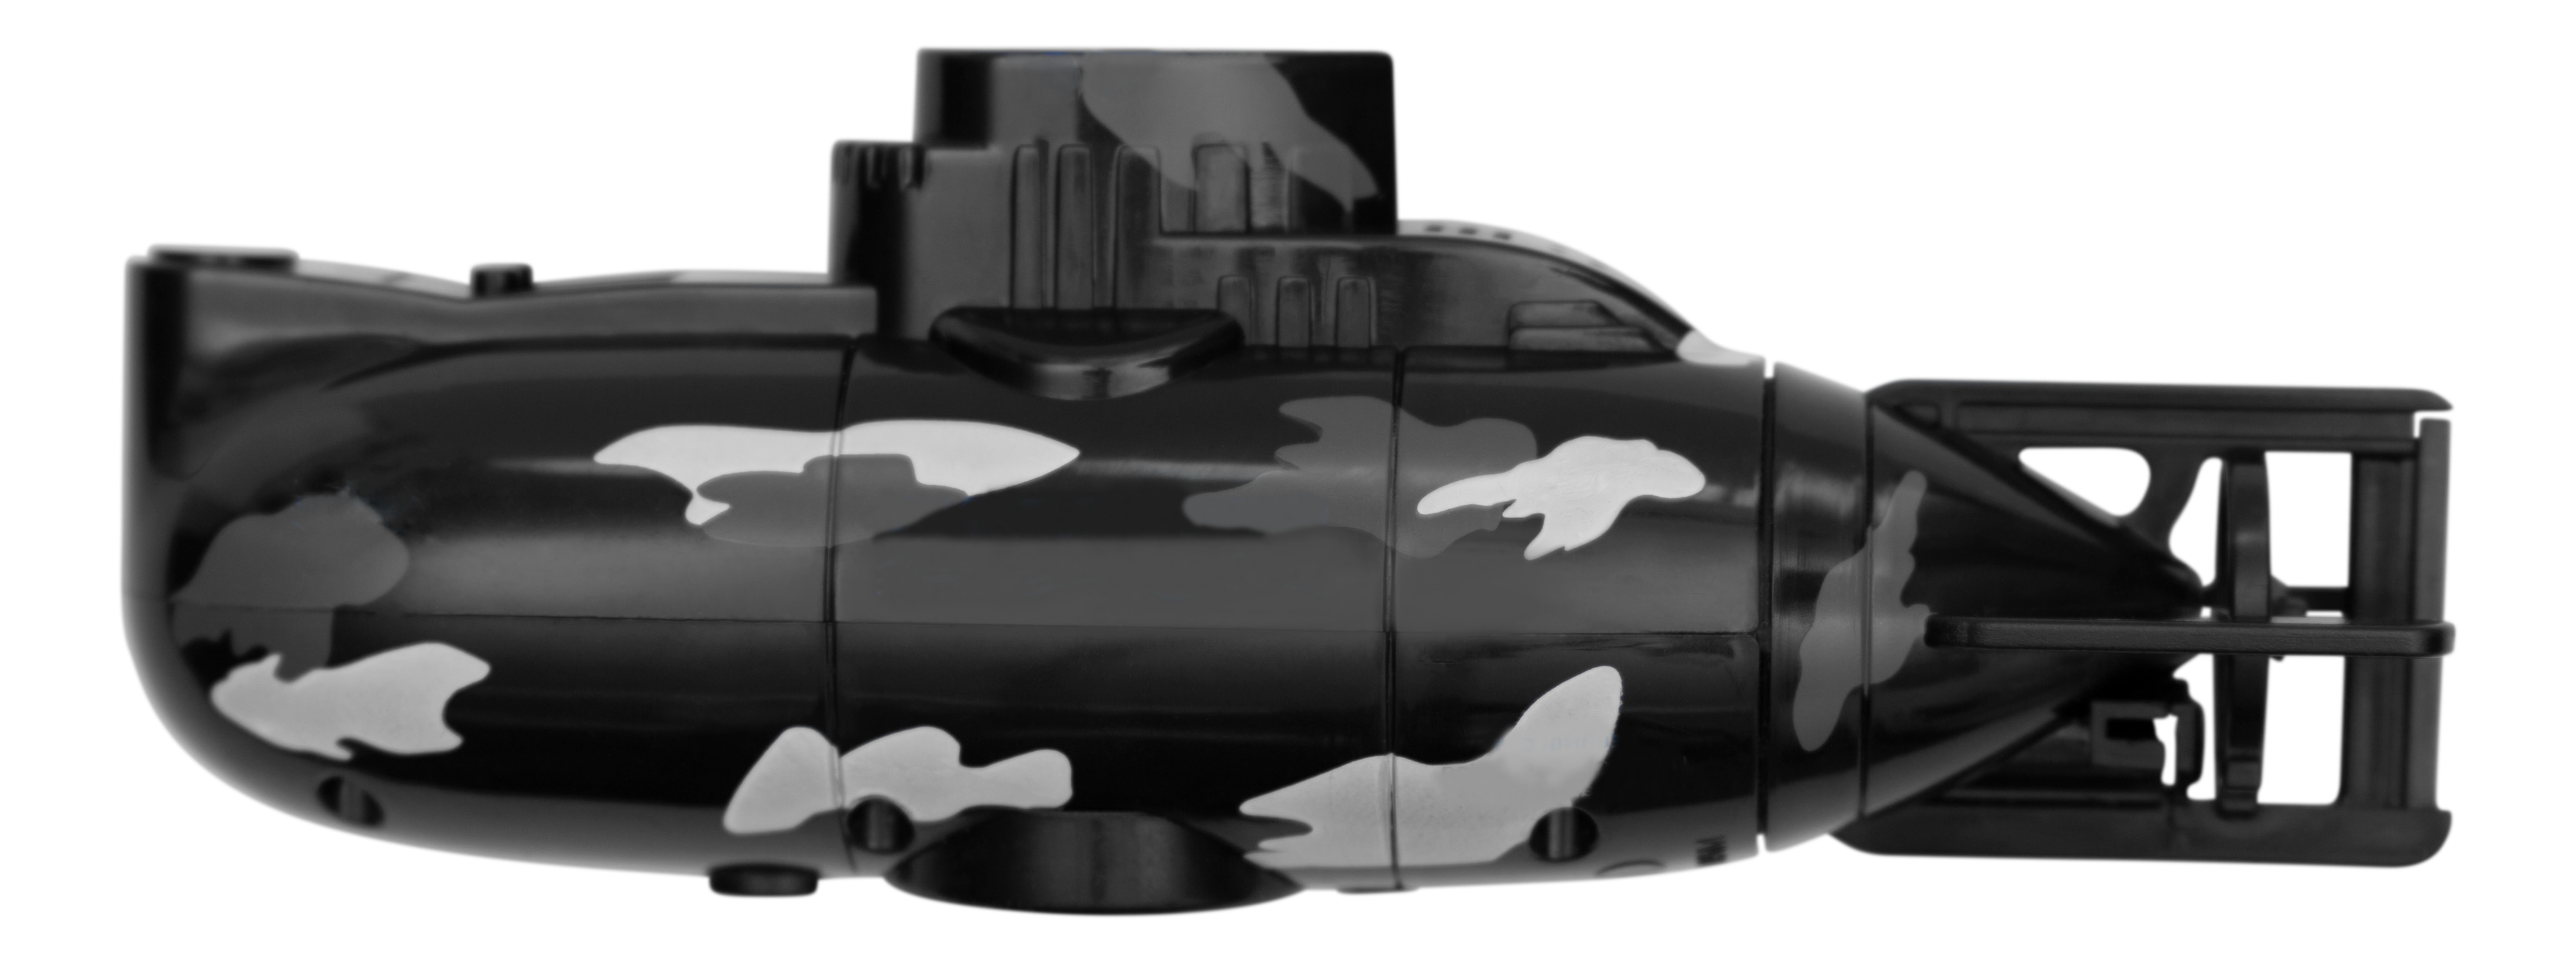 GADGETMONSTER Ferngesteuertes U-Boot